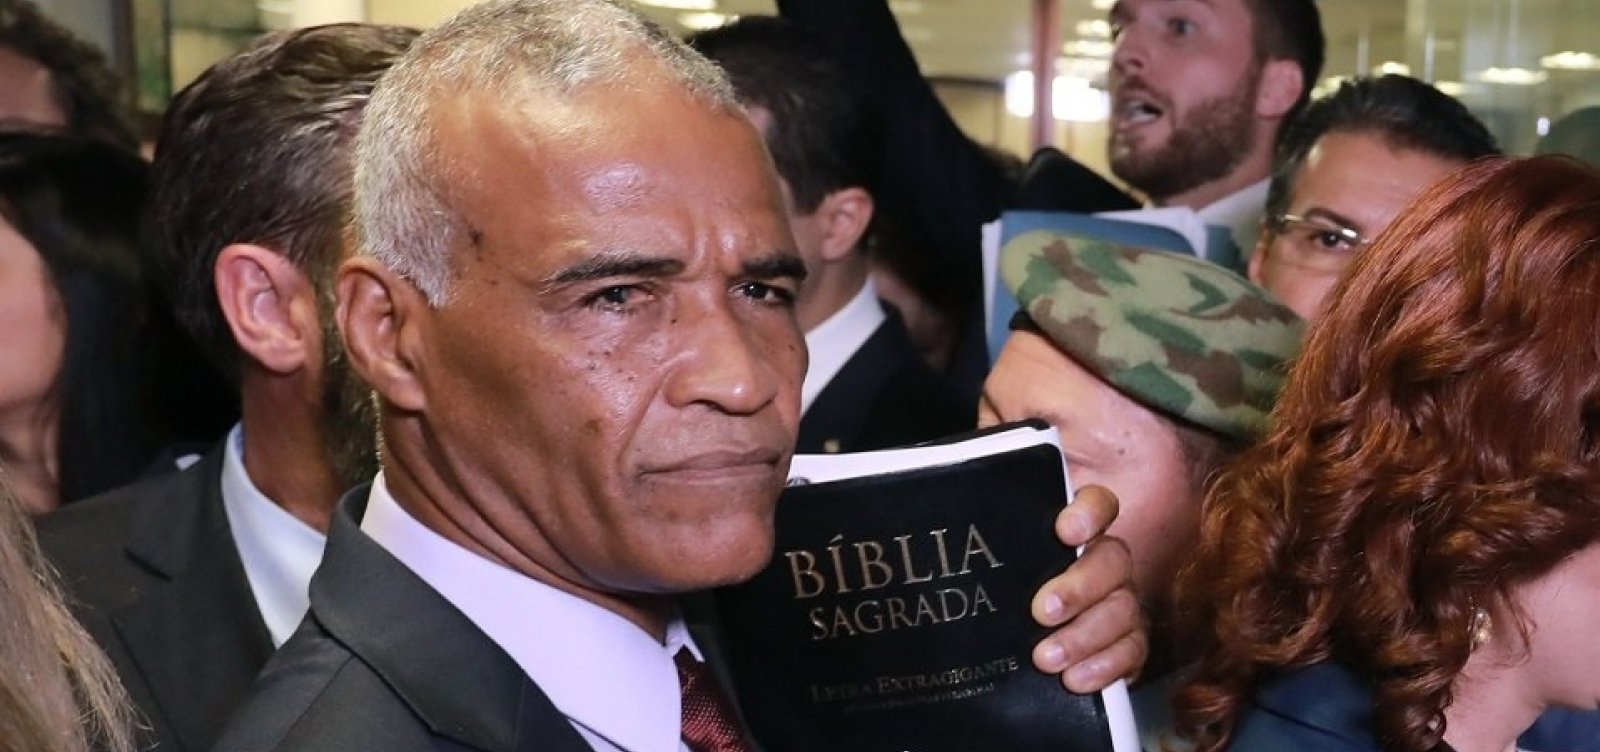 Isidório propõe prisão para quem usar termo 'bíblia' em contexto fora da religião